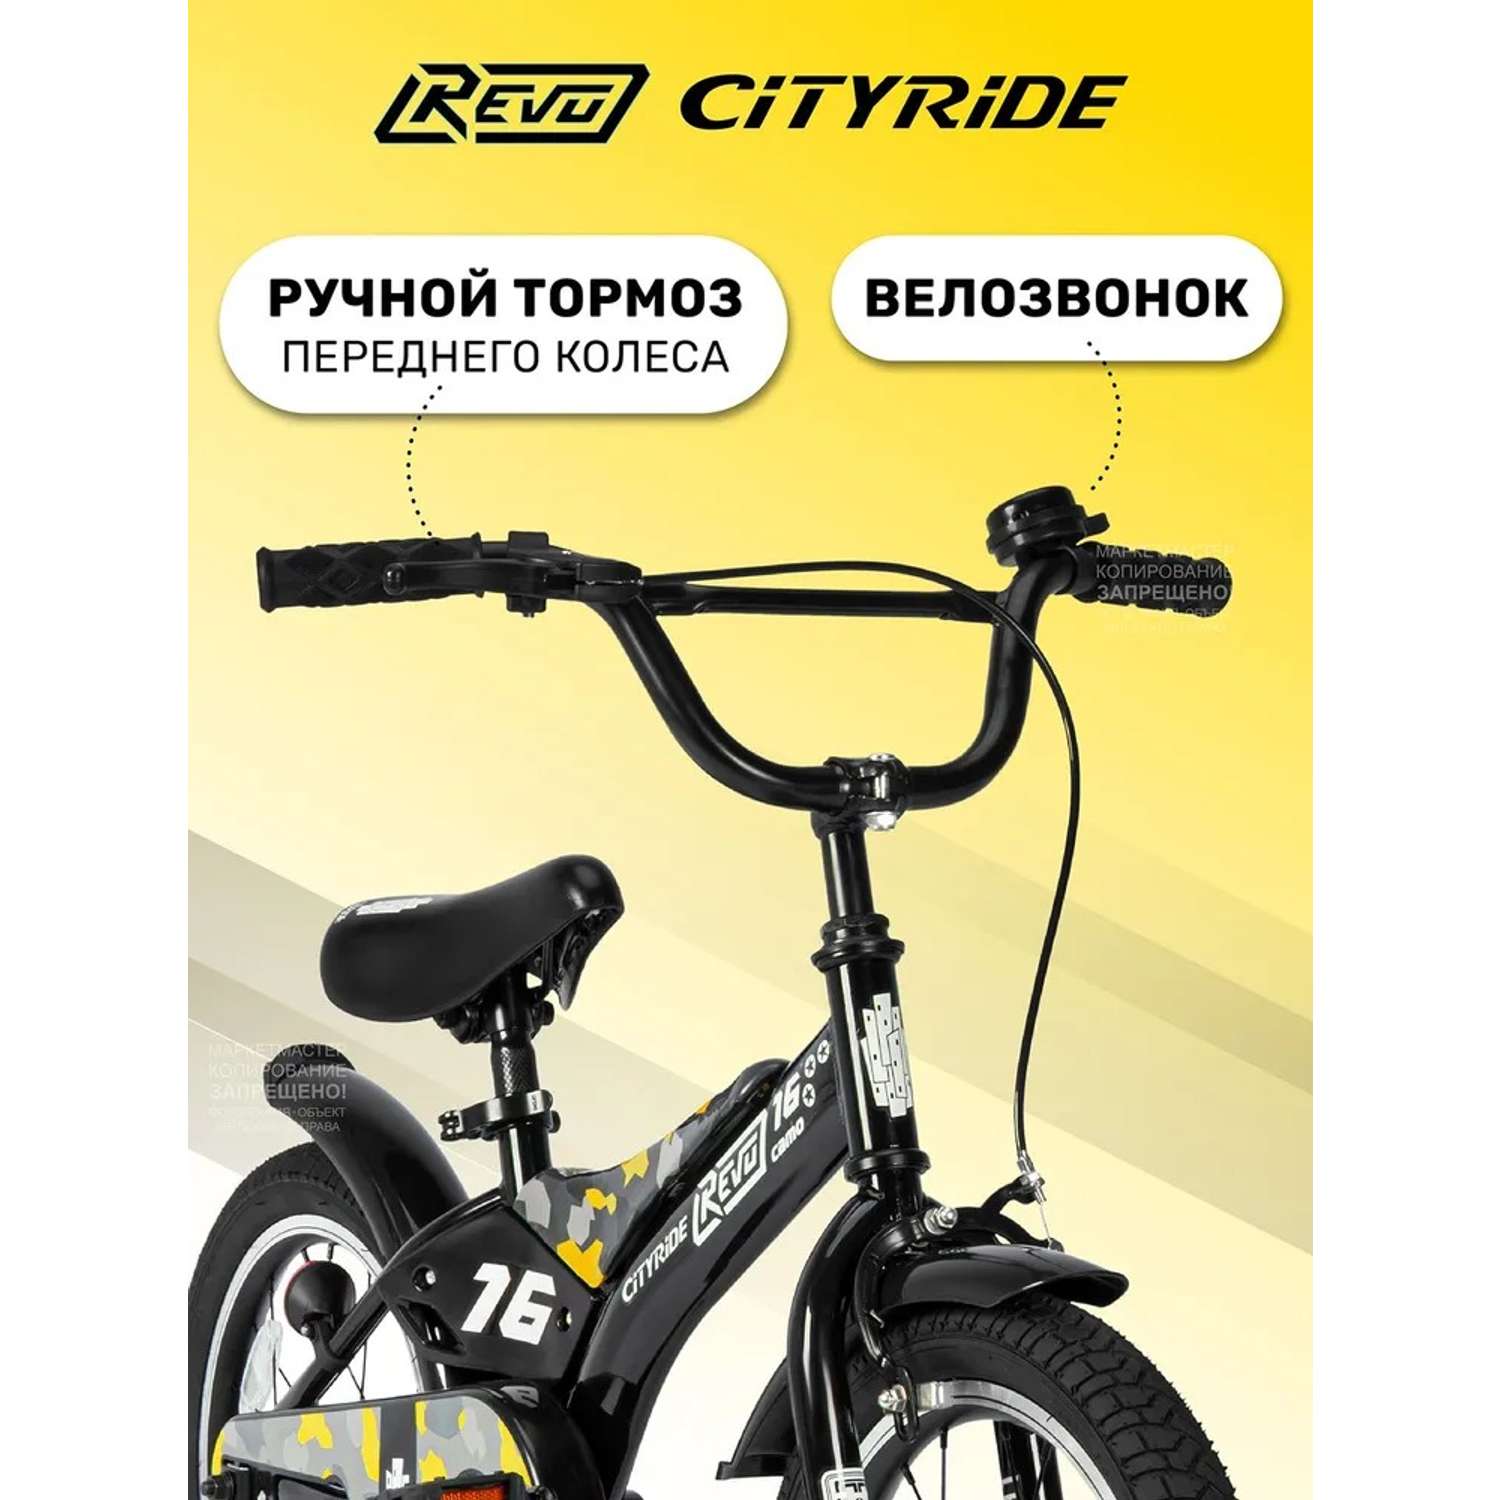 Детский велосипед CITYRIDE Двухколесный Cityride REVO Рама сталь Кожух цепи 100% Диски алюминий 16 Втулки сталь - фото 3